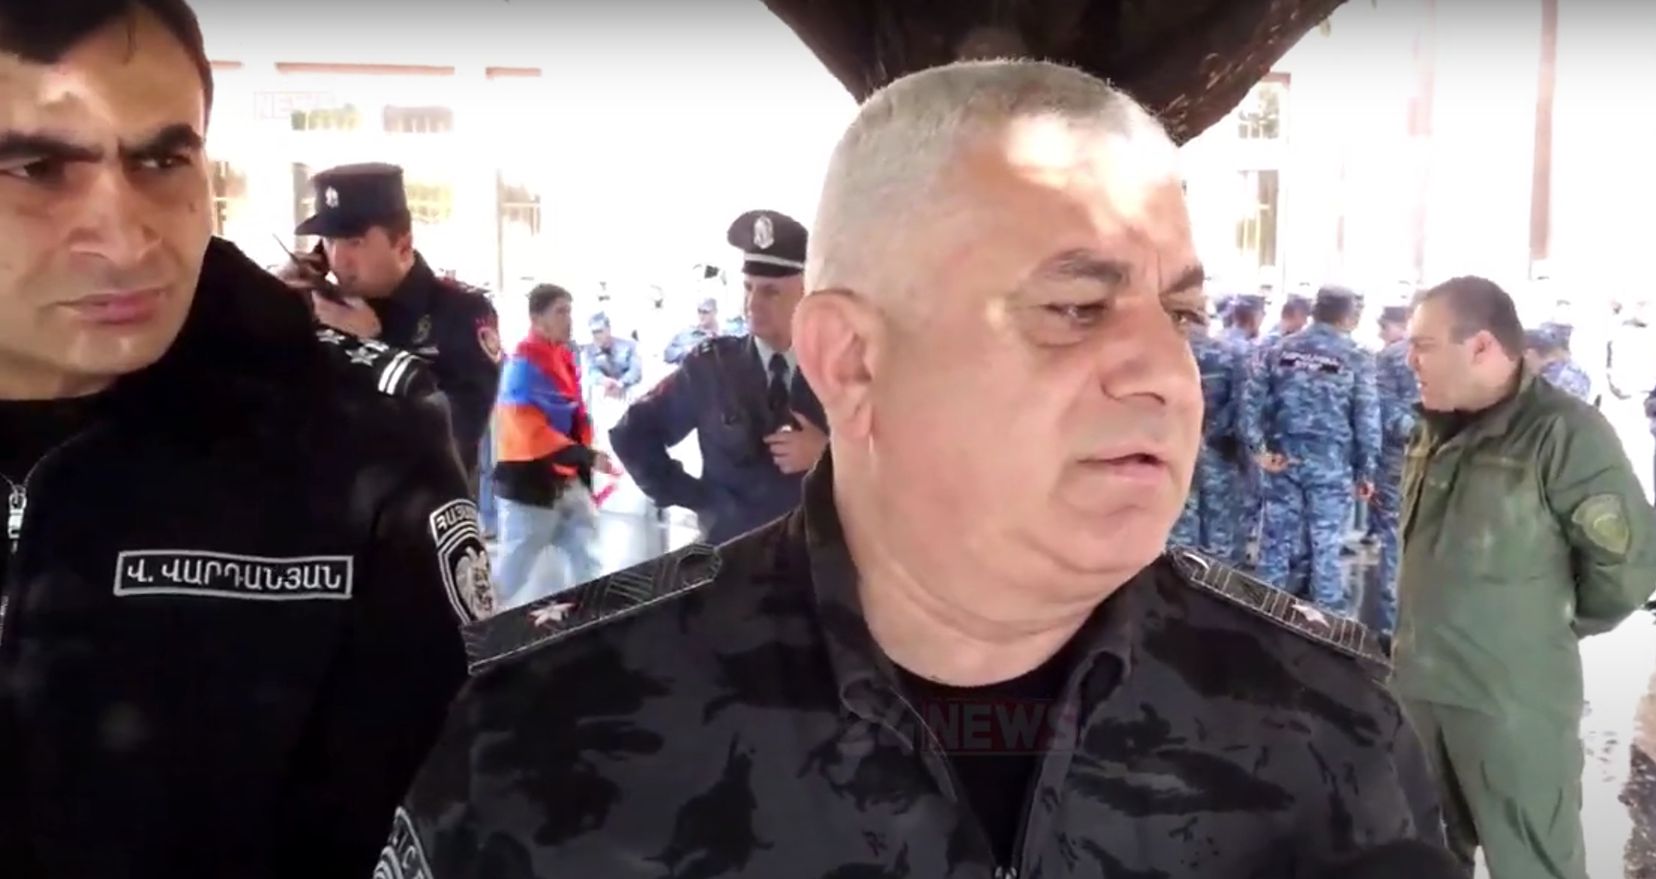 Ոստիկանությունը ոչ ոքի չի գաղտնալսել, ով տարածել է` նրան հարցրեք. ոստիկանապետ (տեսանյութ)